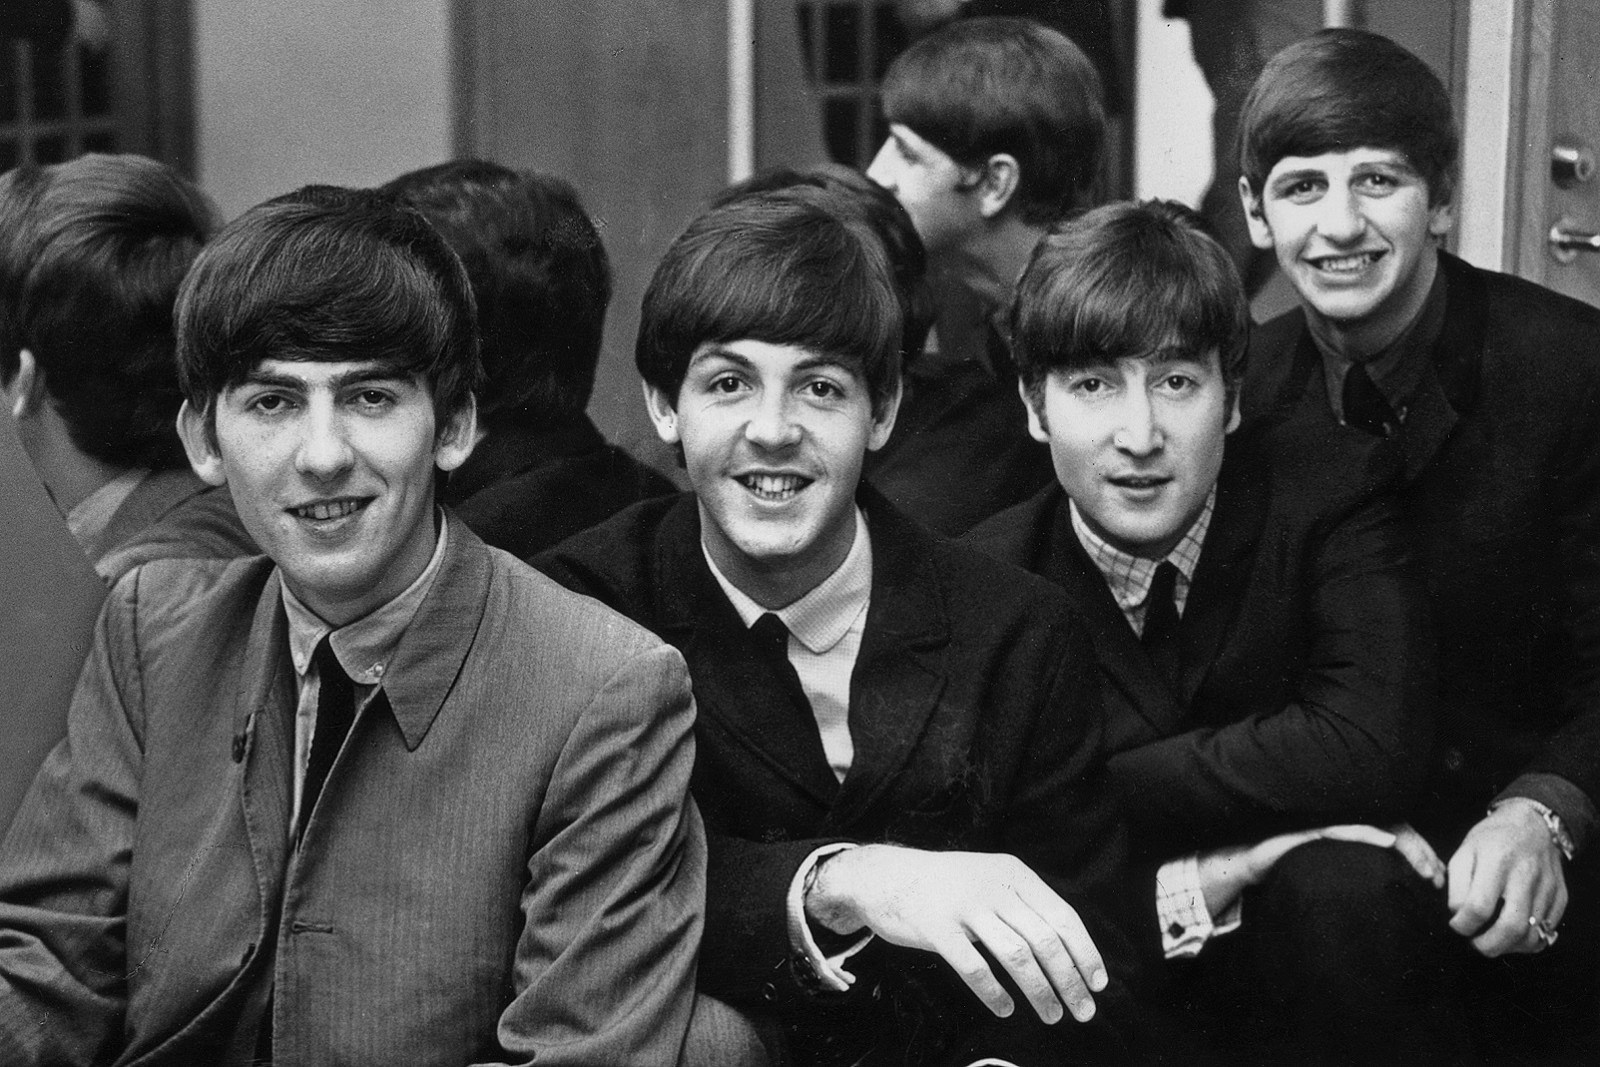 Σπάνιες και αδημοσίευτες φωτογραφίες των Beatles βγήκαν στο «σφυρί» (βίντεο)